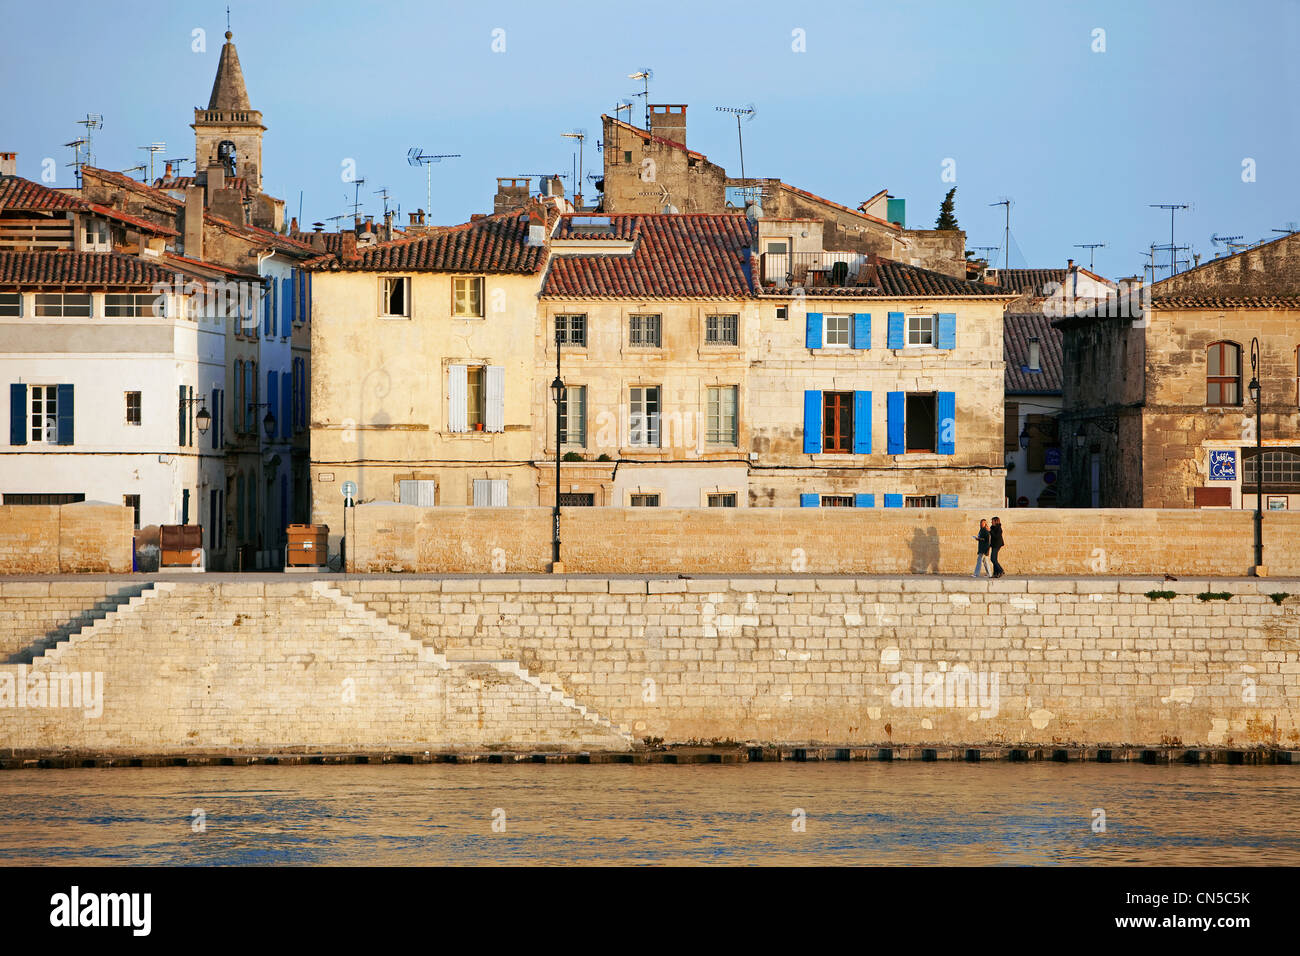 France, Bouches du Rhone, Arles, quai de la Roquette and the Rhone Stock Photo